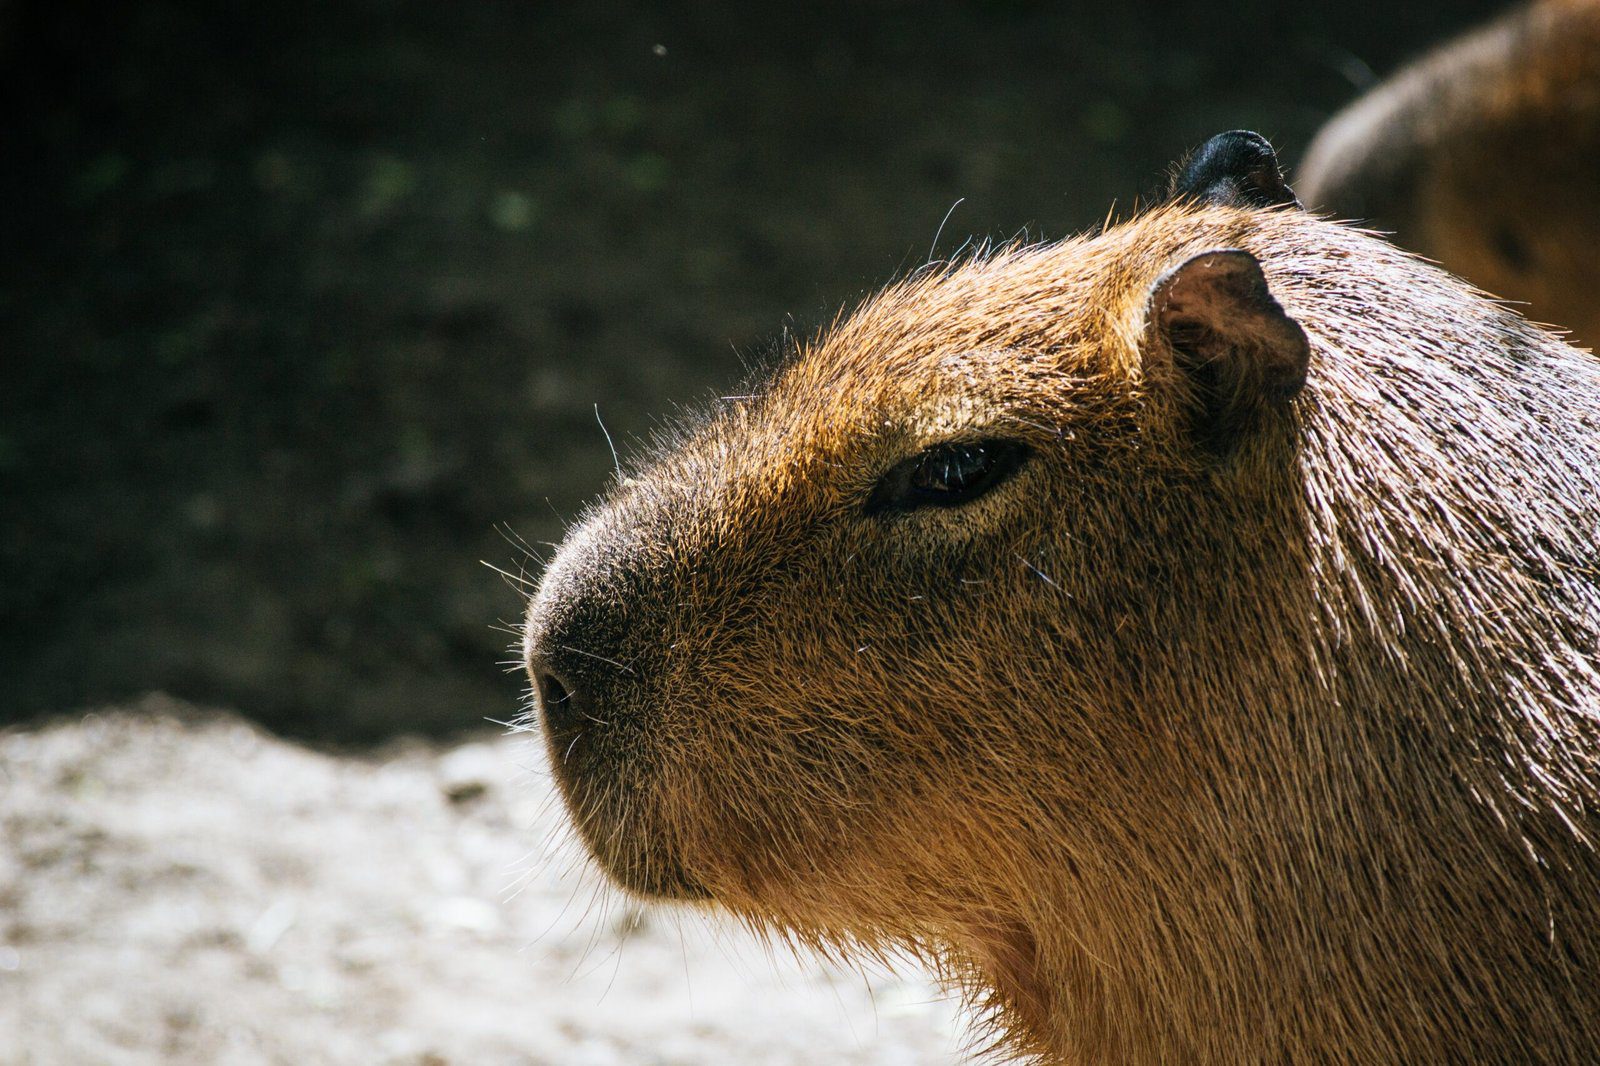 Adorable Capybara for Sale in Scotland